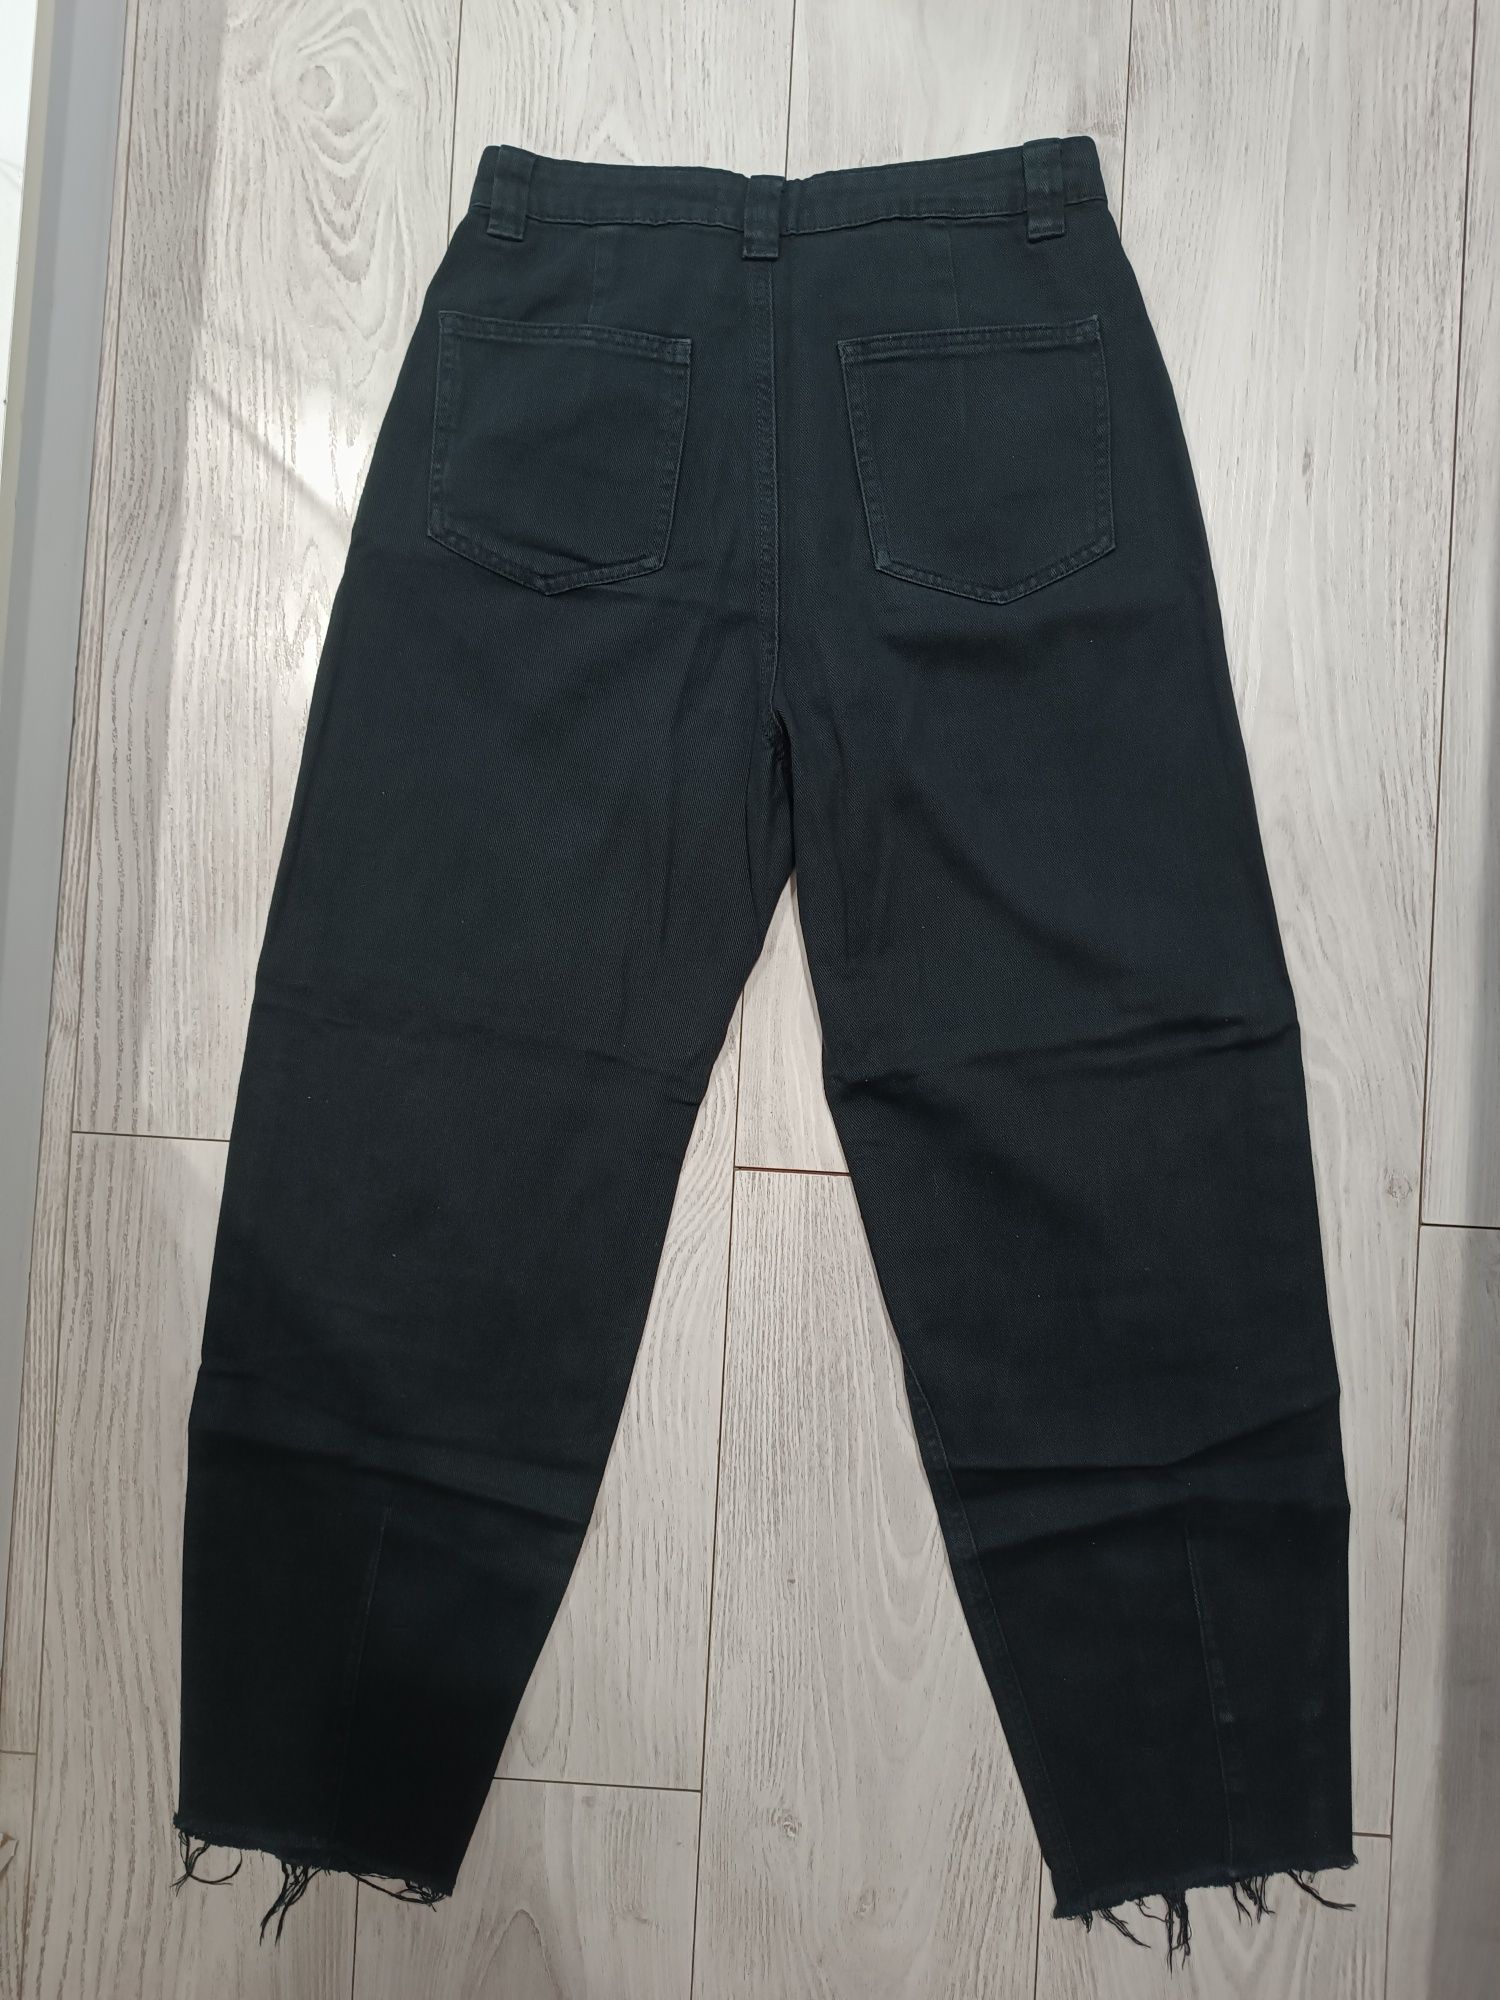 Czarne spodnie jeansowe/jeansy mom jeans fit high waist petite 38